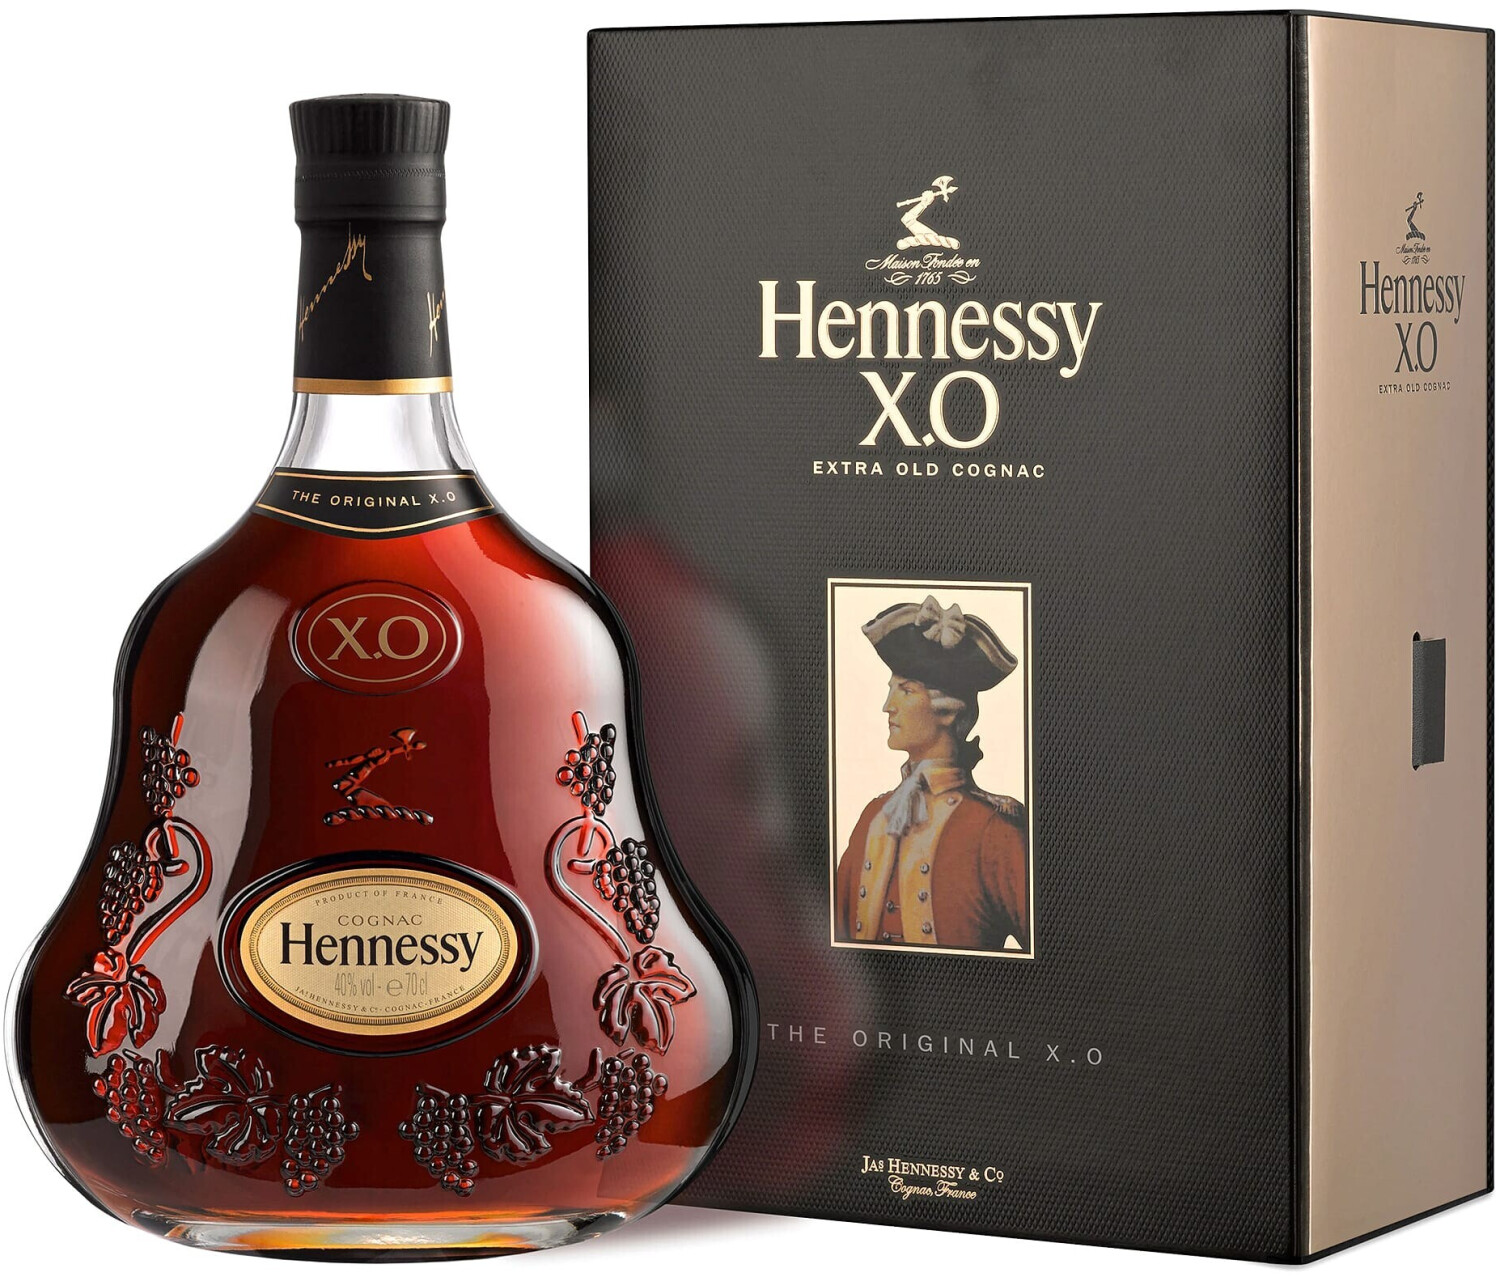 Preisvergleich | 196,95 bei Hennessy ab XO €